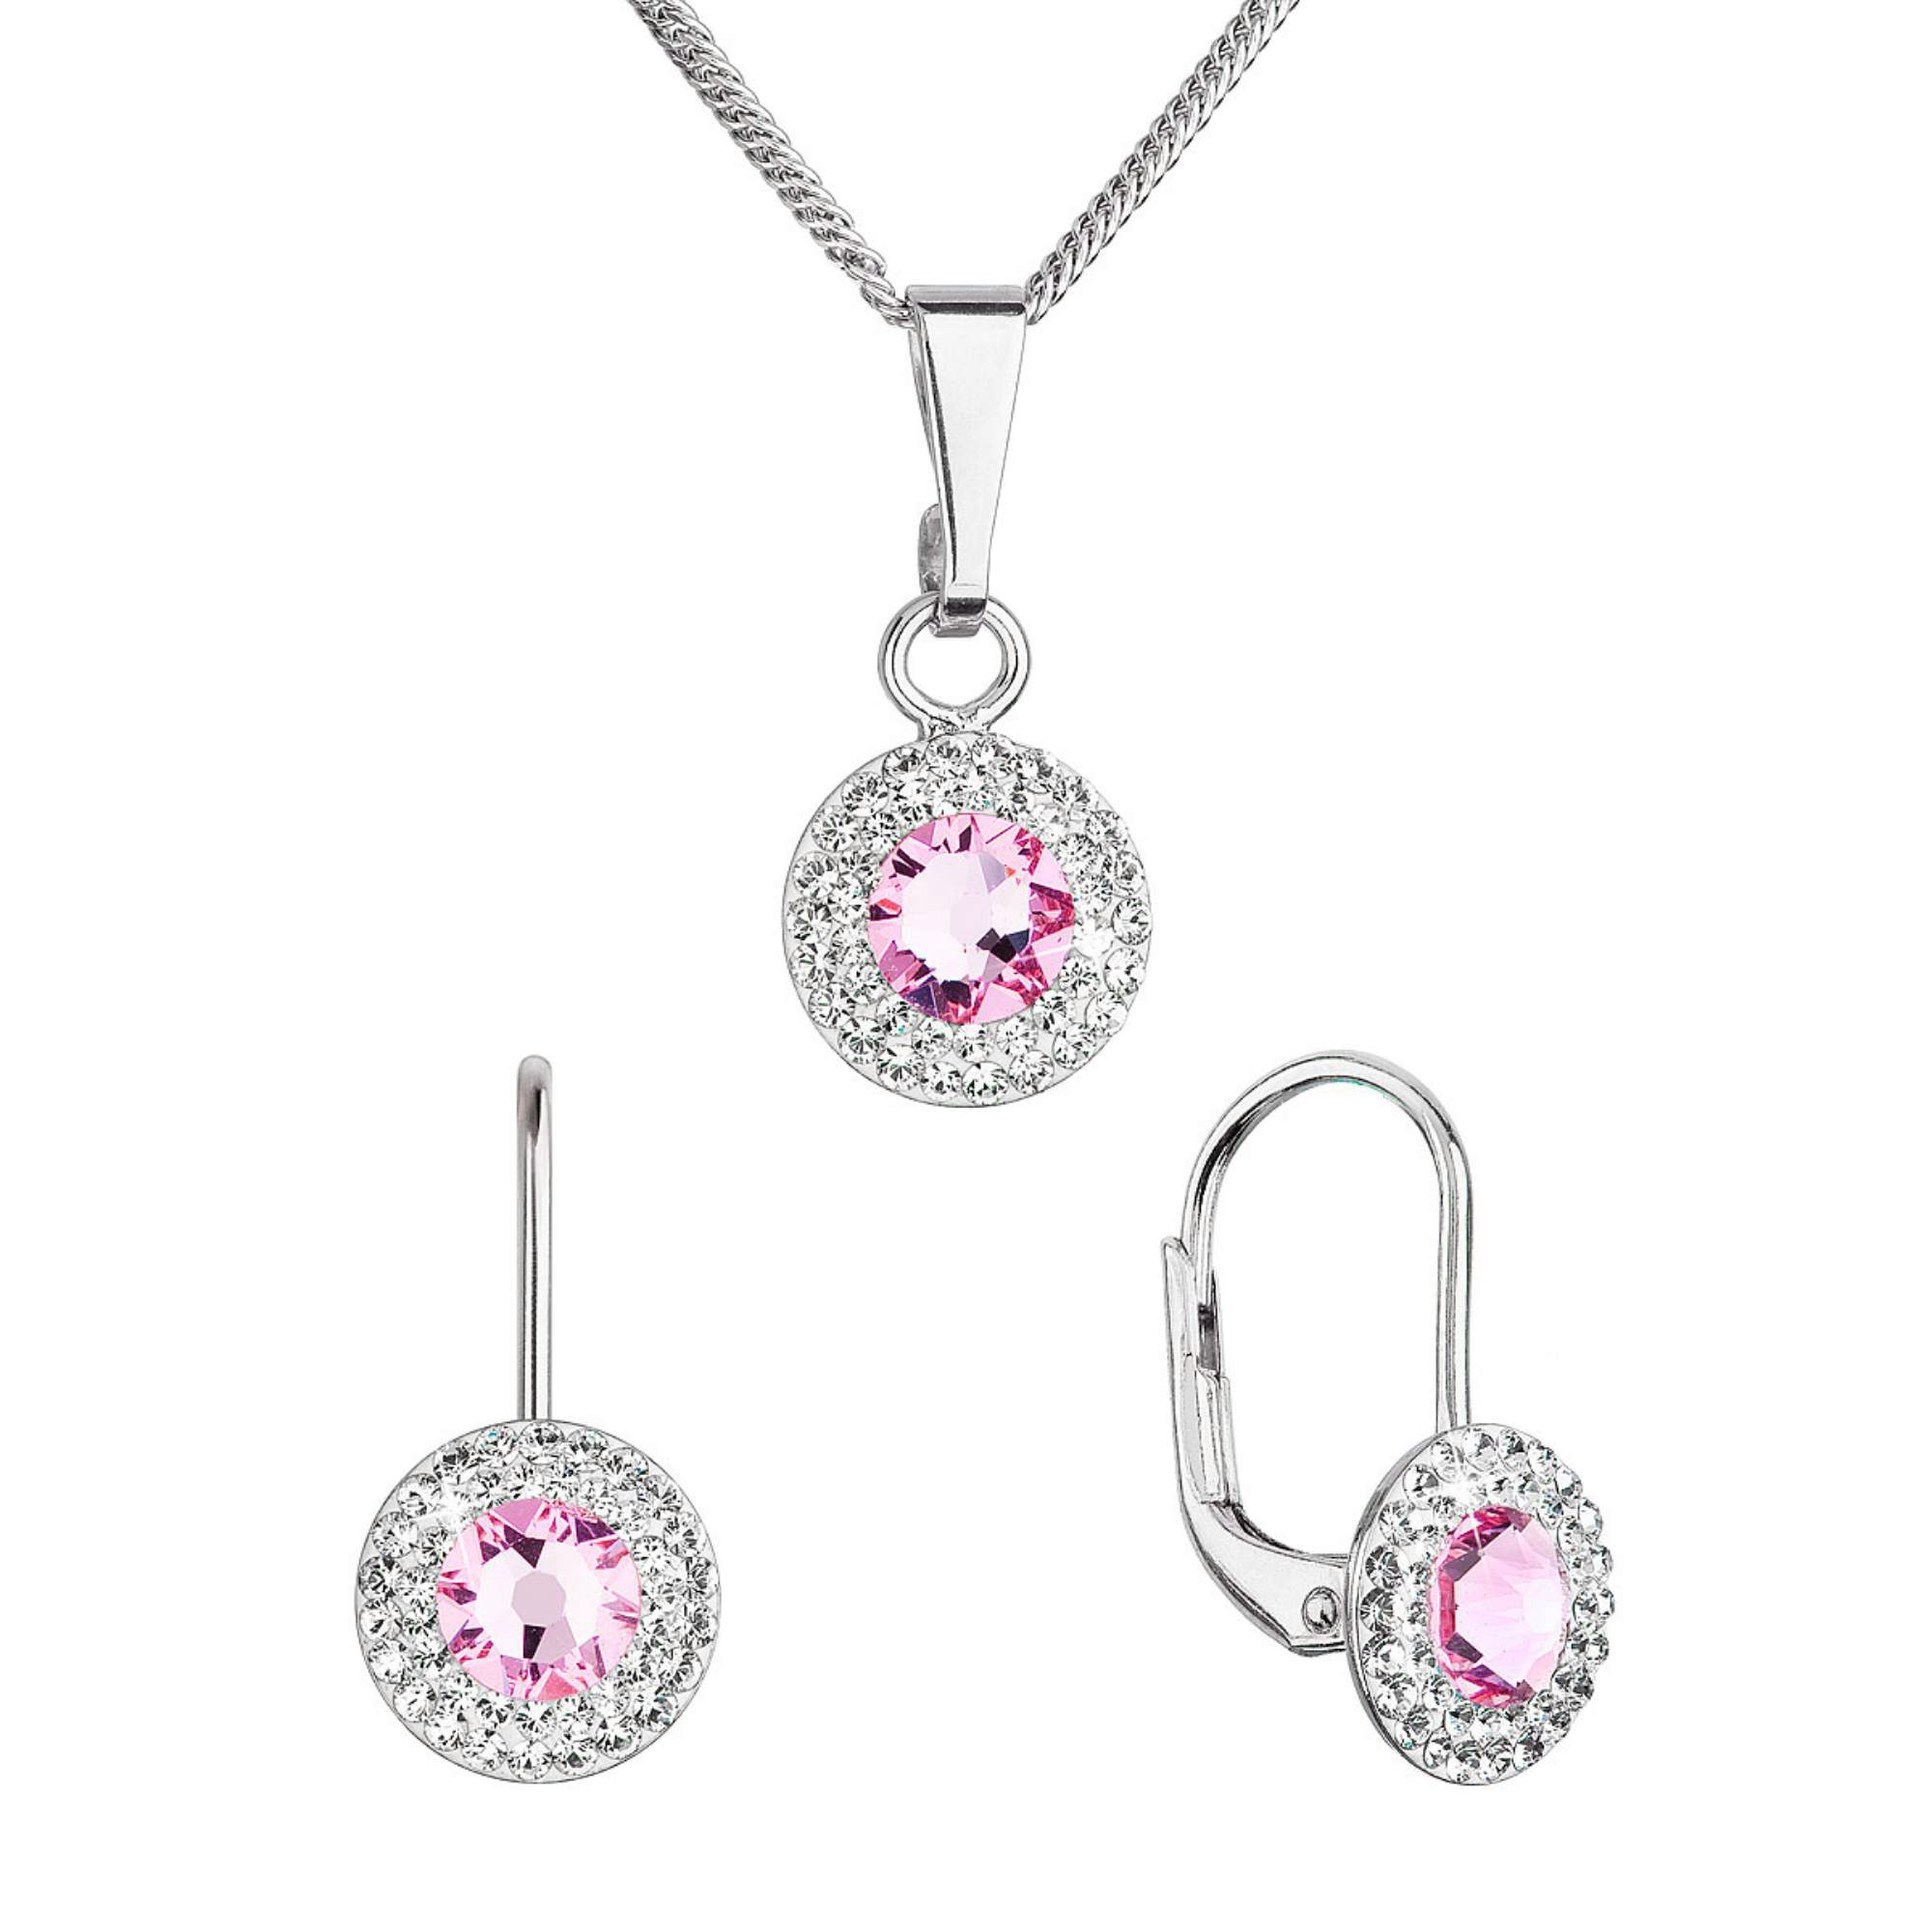 Evolution Group Sada šperků s krystaly Swarovski náušnice a přívěsek růžové kulaté 39109.3 rose